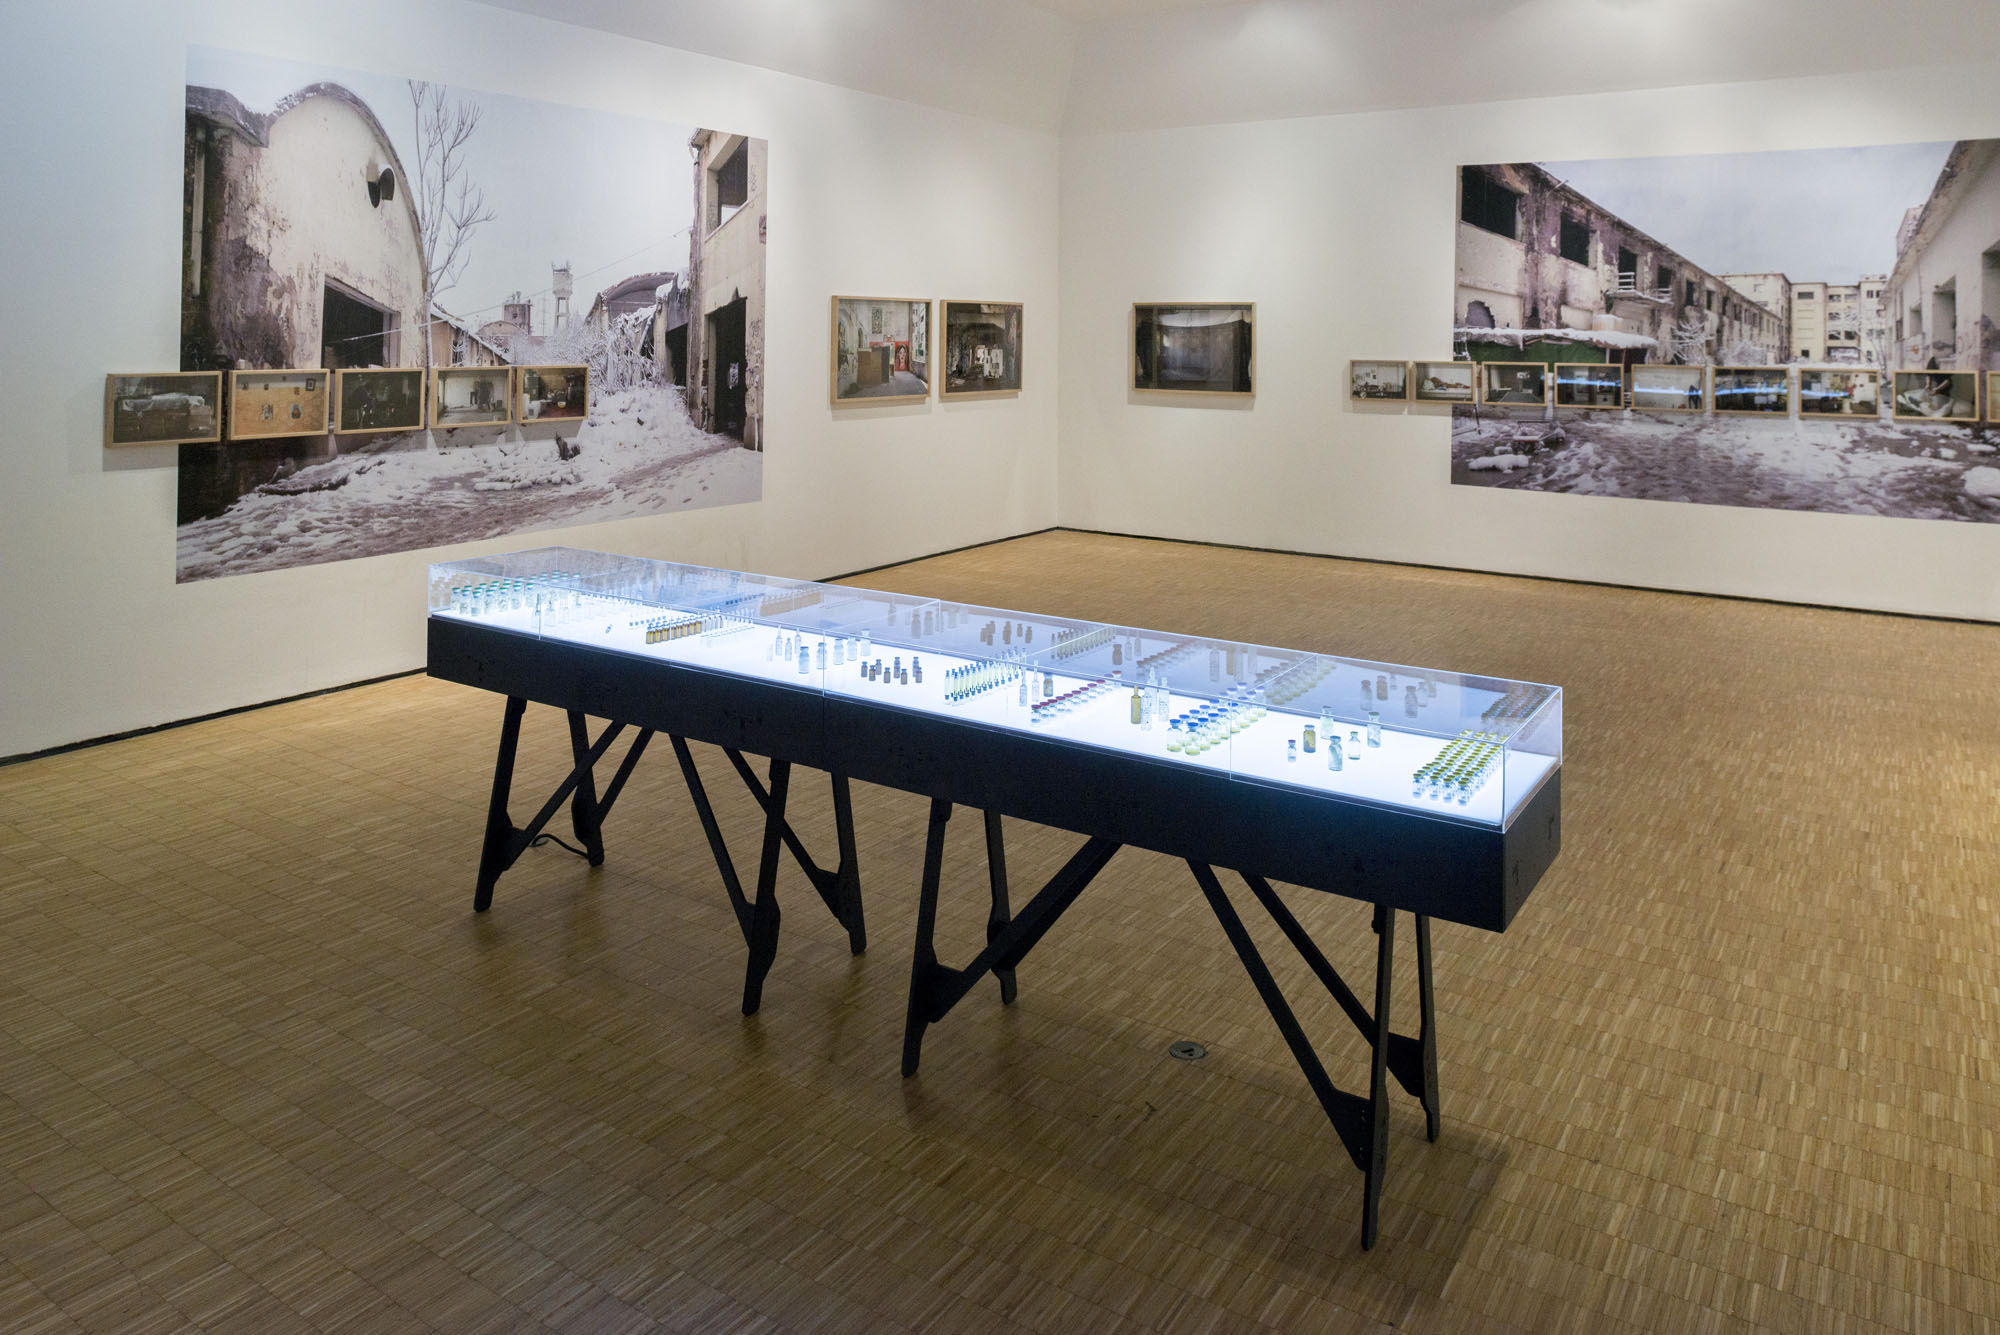 Il progetto “Mush/rooms, 2018” di Gloria Guglielmo e Marco Passaro esposto nella mostra “Abitanti. Sette sguardi sull'Italia di oggi”, Triennale di Milano, 2018